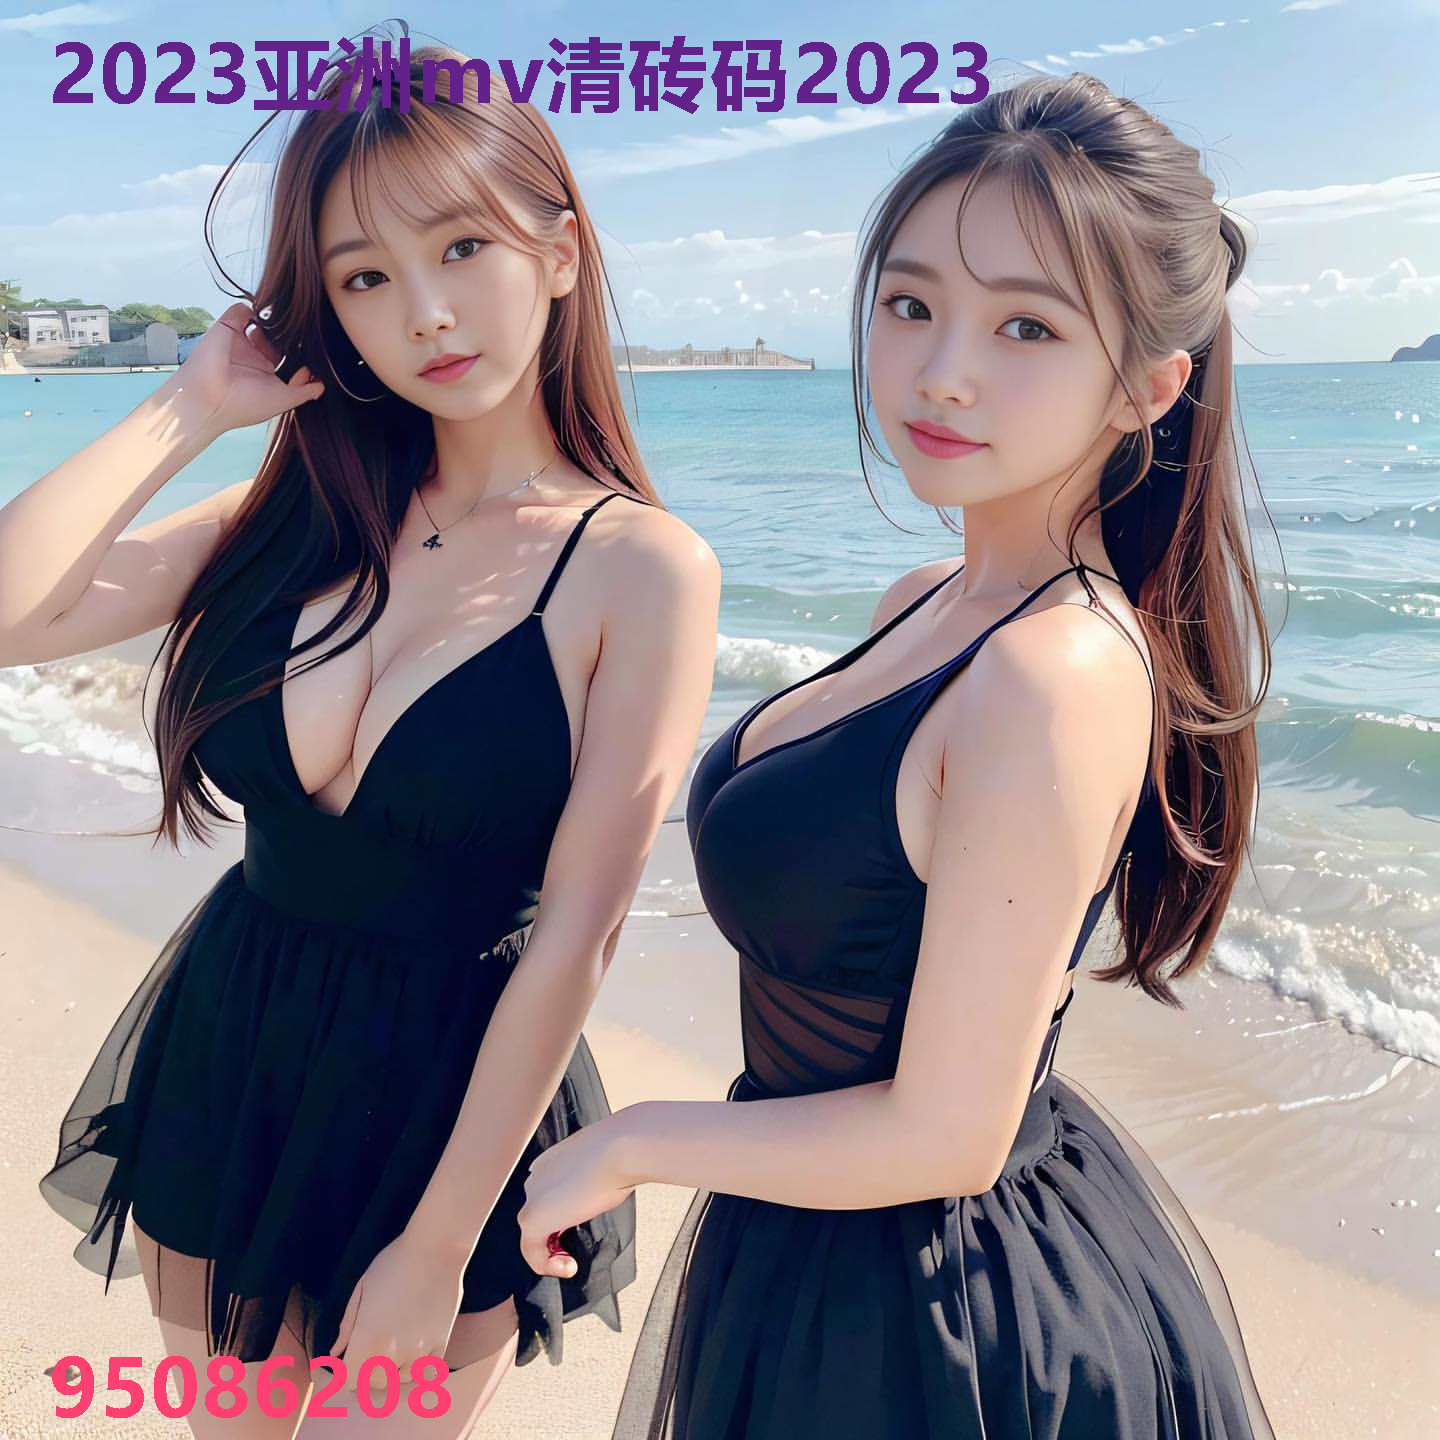 2023亚洲mv清砖码2023